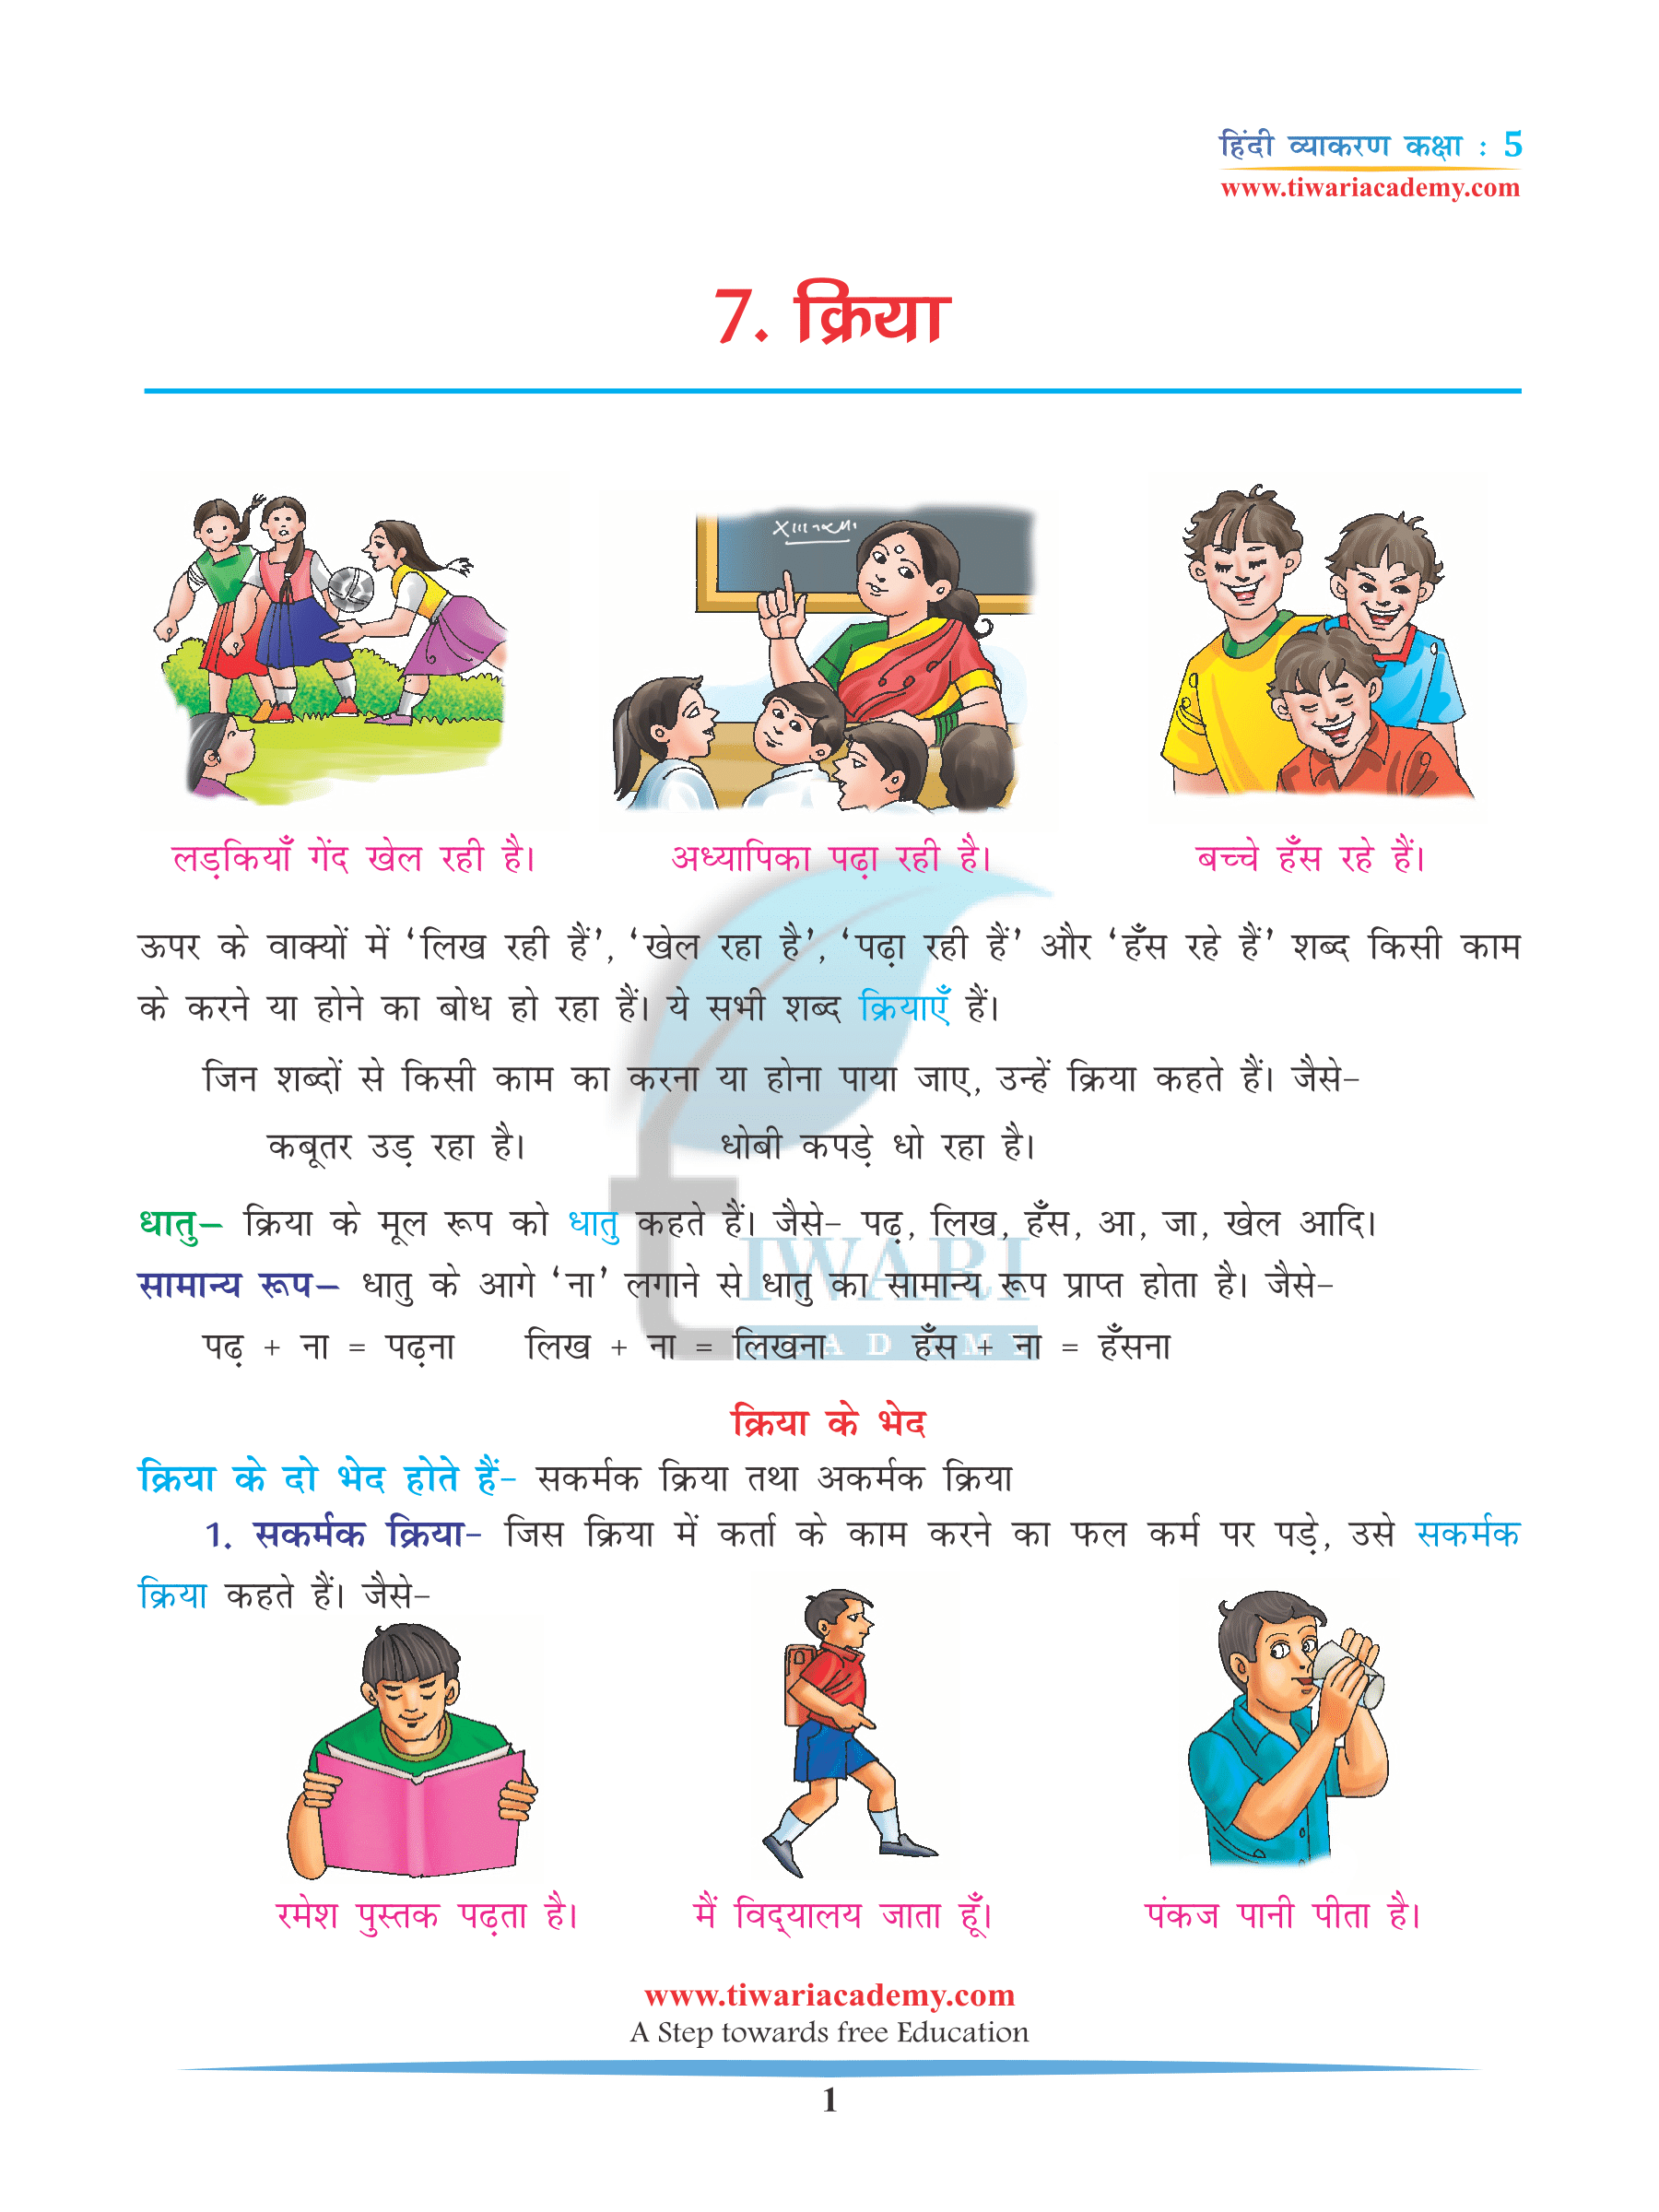 CBSE NCERT Solutions for Class 5 Hindi Grammar Chapter 7 Kriya